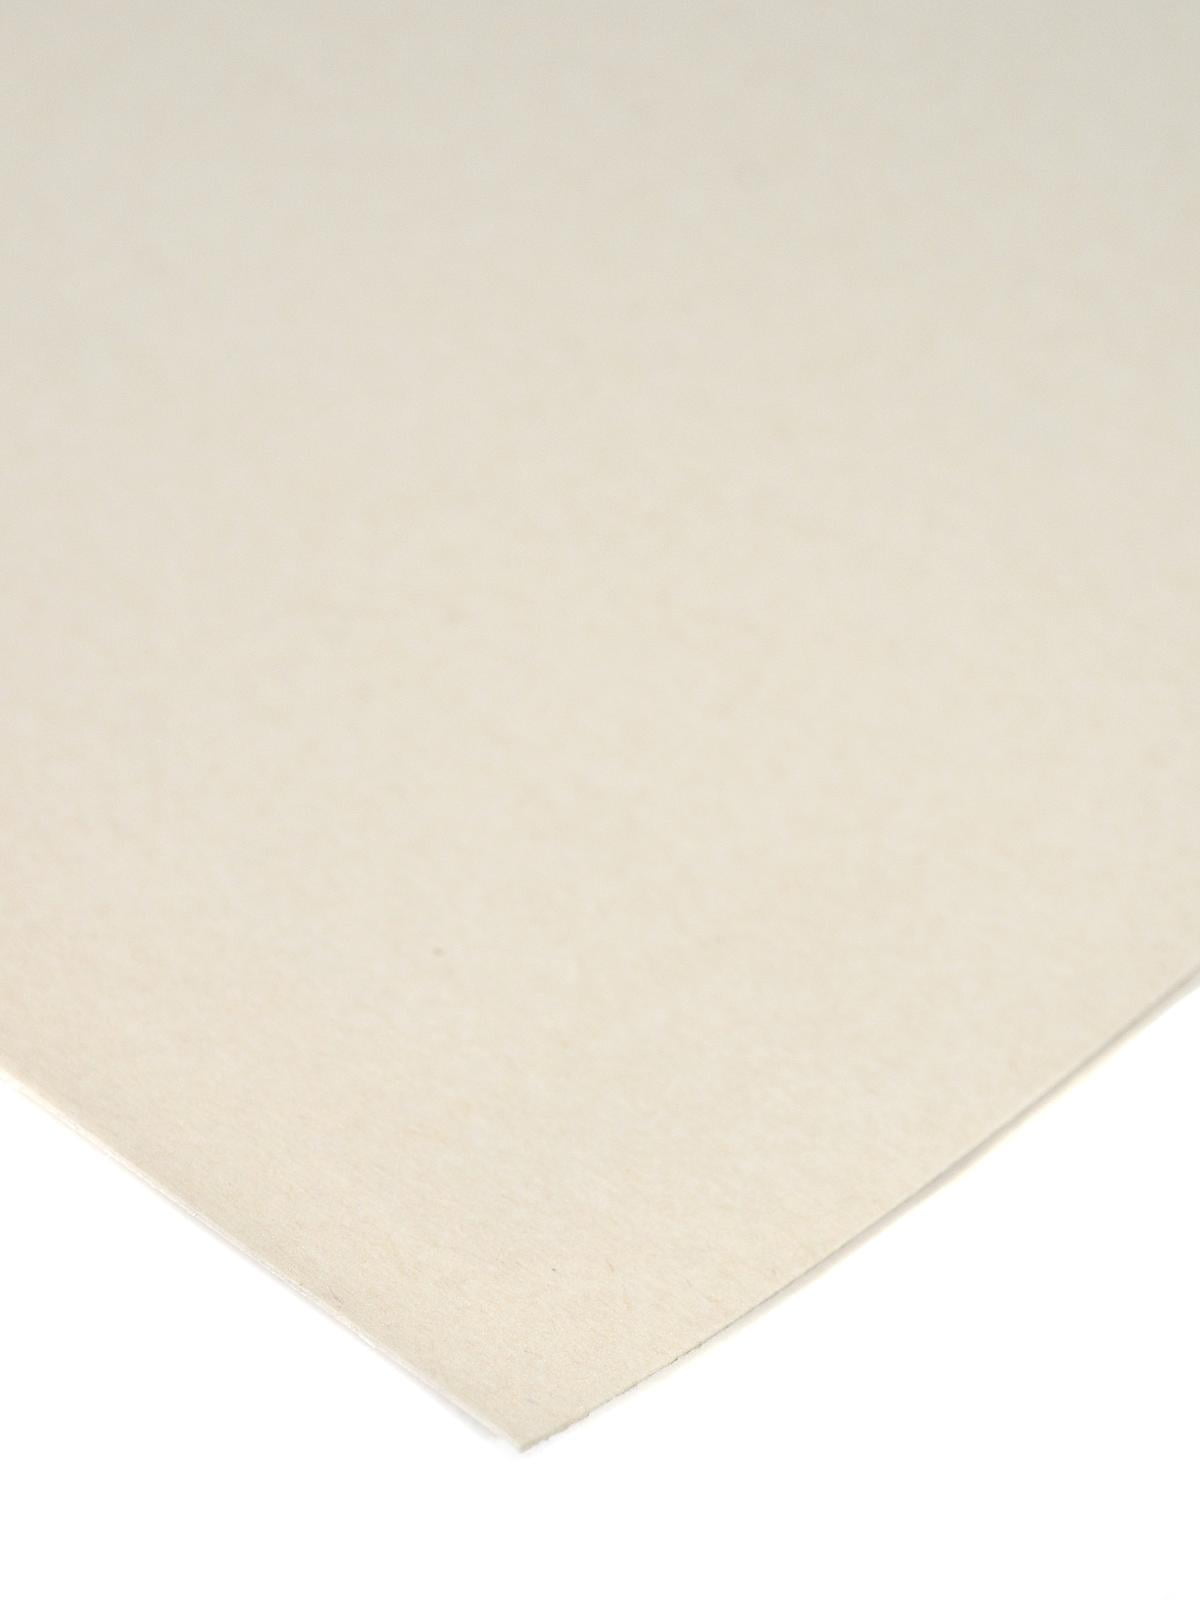 UART Sanded Pastel Paper Sampler Set, 21 x 27, 4 Sheets & 4 Grades